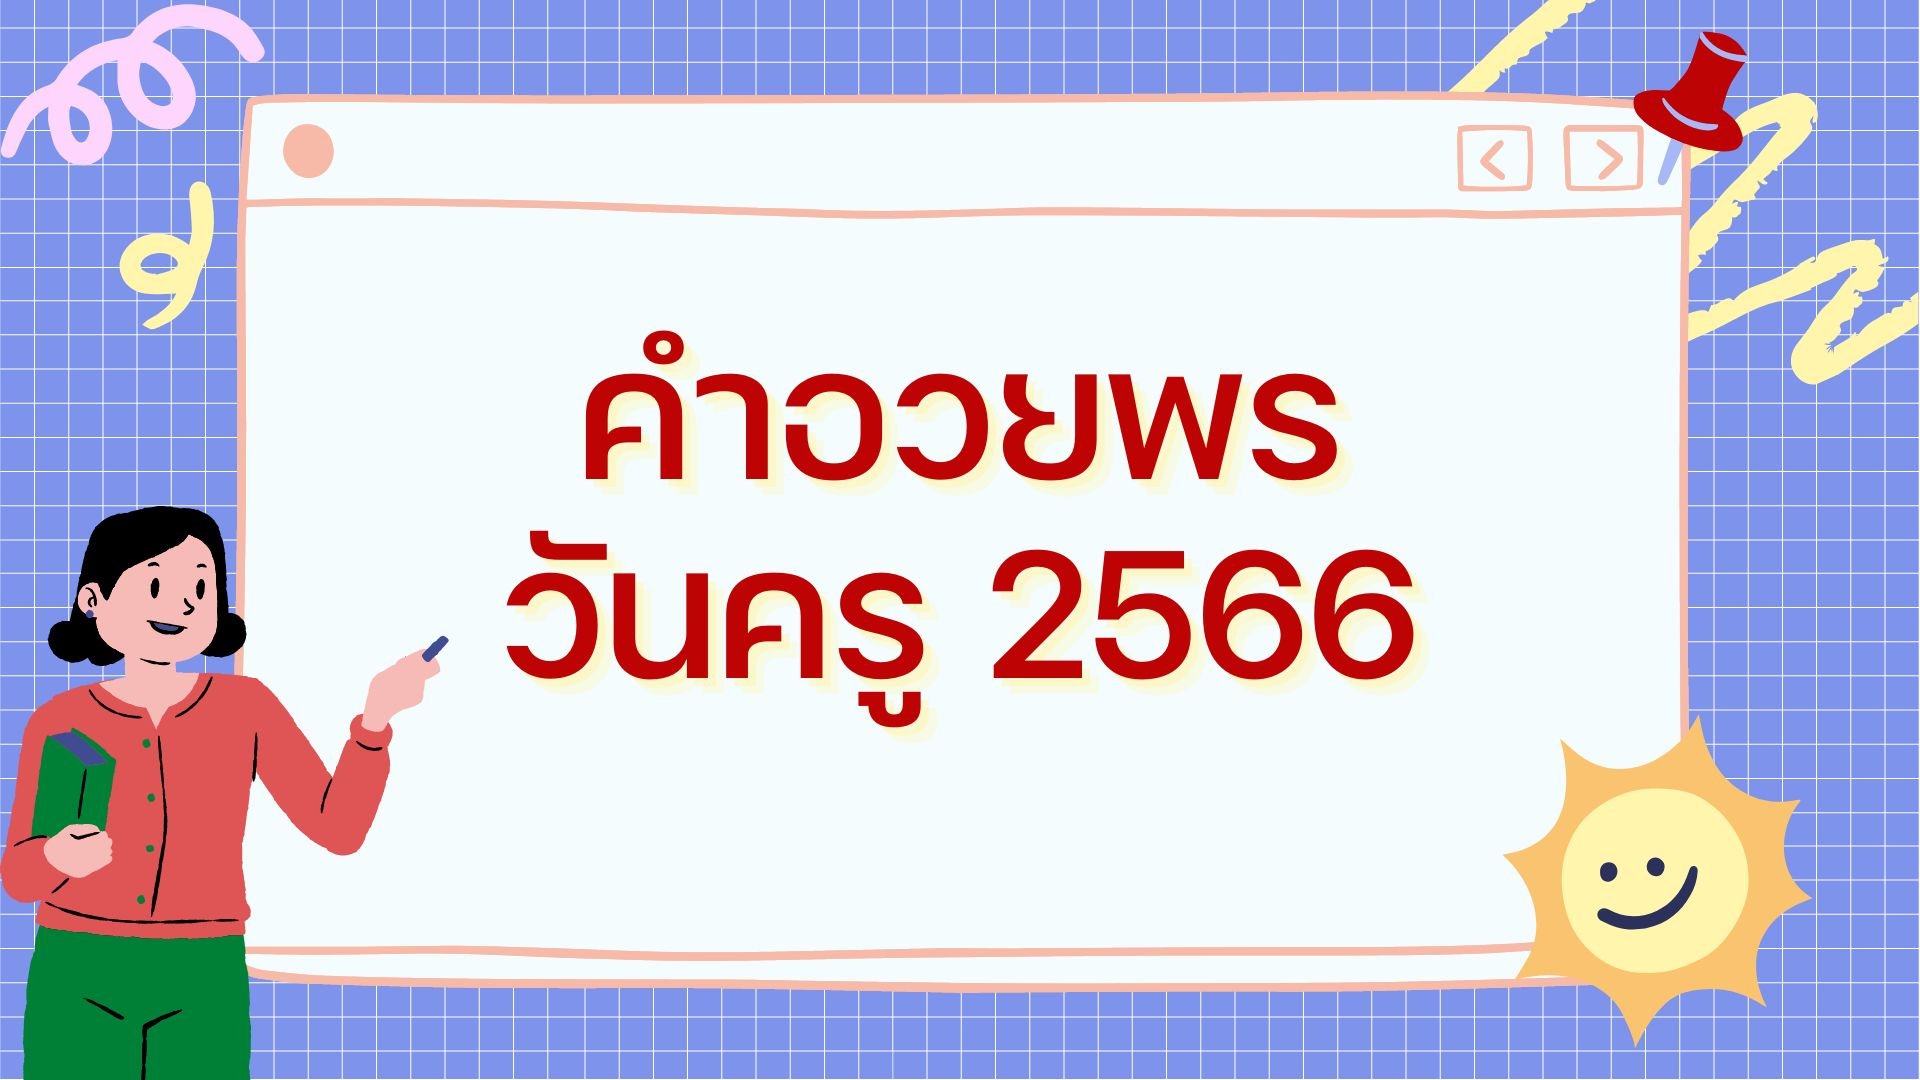 คำอวยพรวันครู 2566 ส่งตรงข้อความซึ้ง ๆ เพื่อขอบคุณครู | Thaiger ข่าวไทย